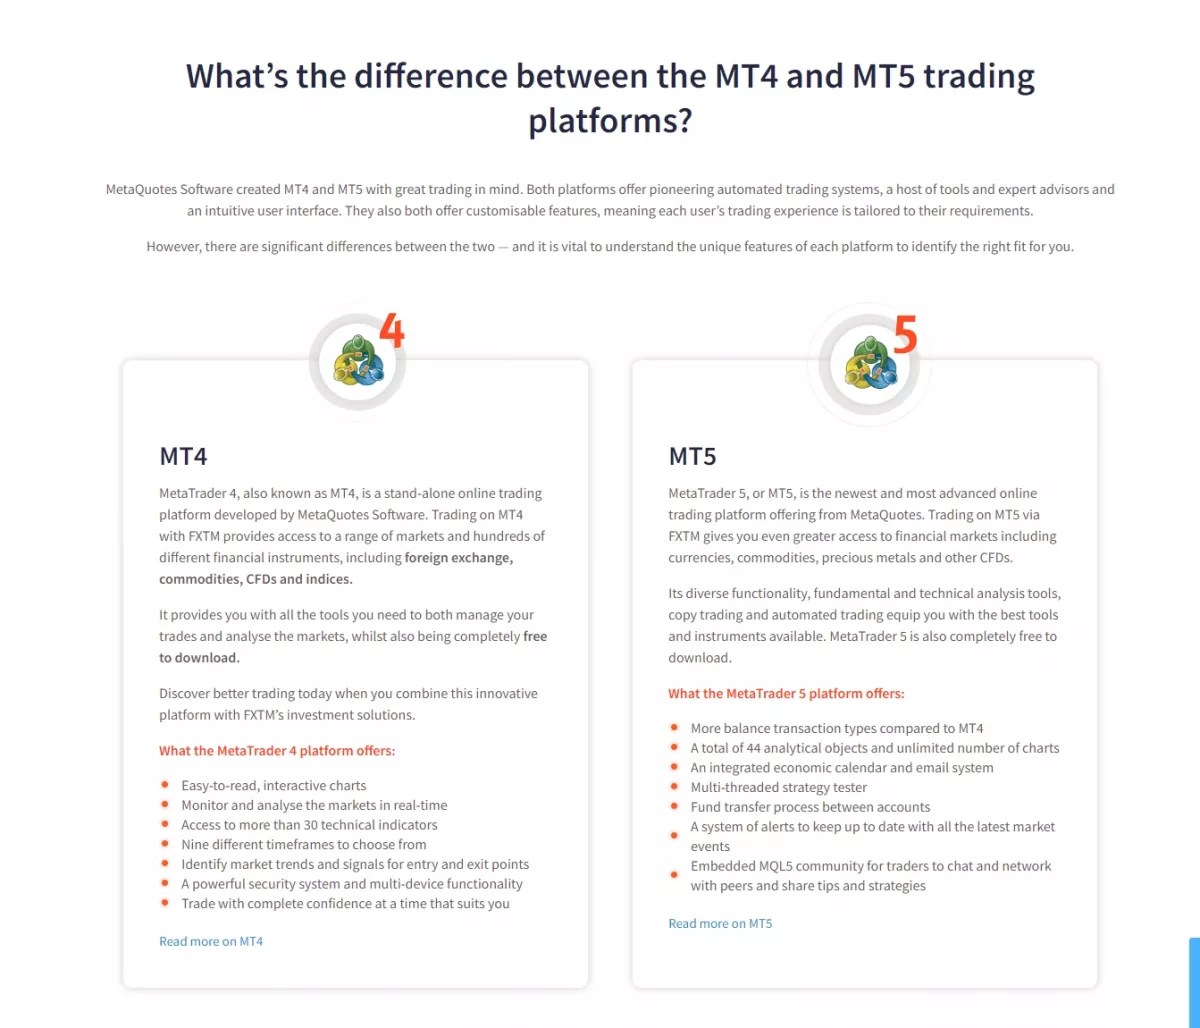 FXTM's MetaTrader 4 and MetaTrader 5 trading platforms